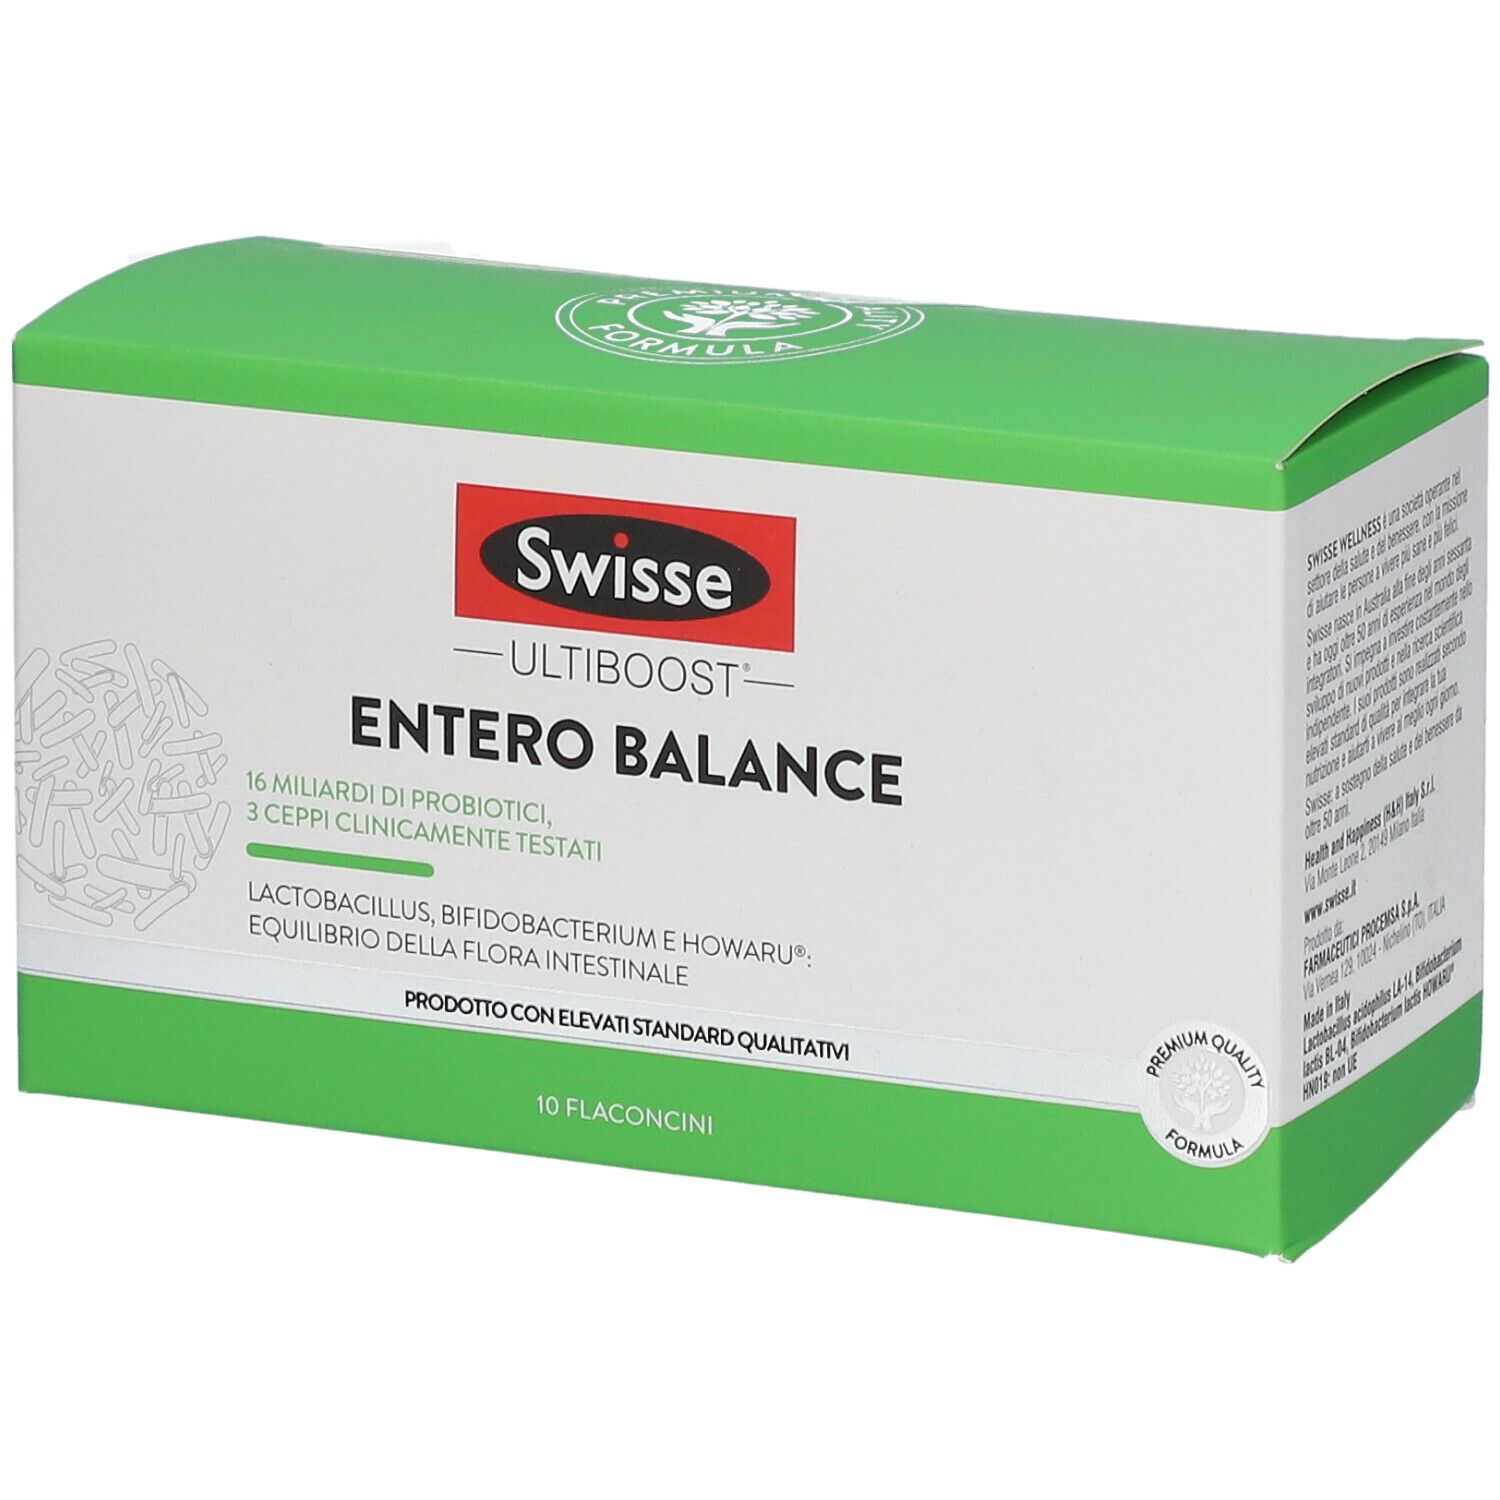 Image of Swisse Entero Balance